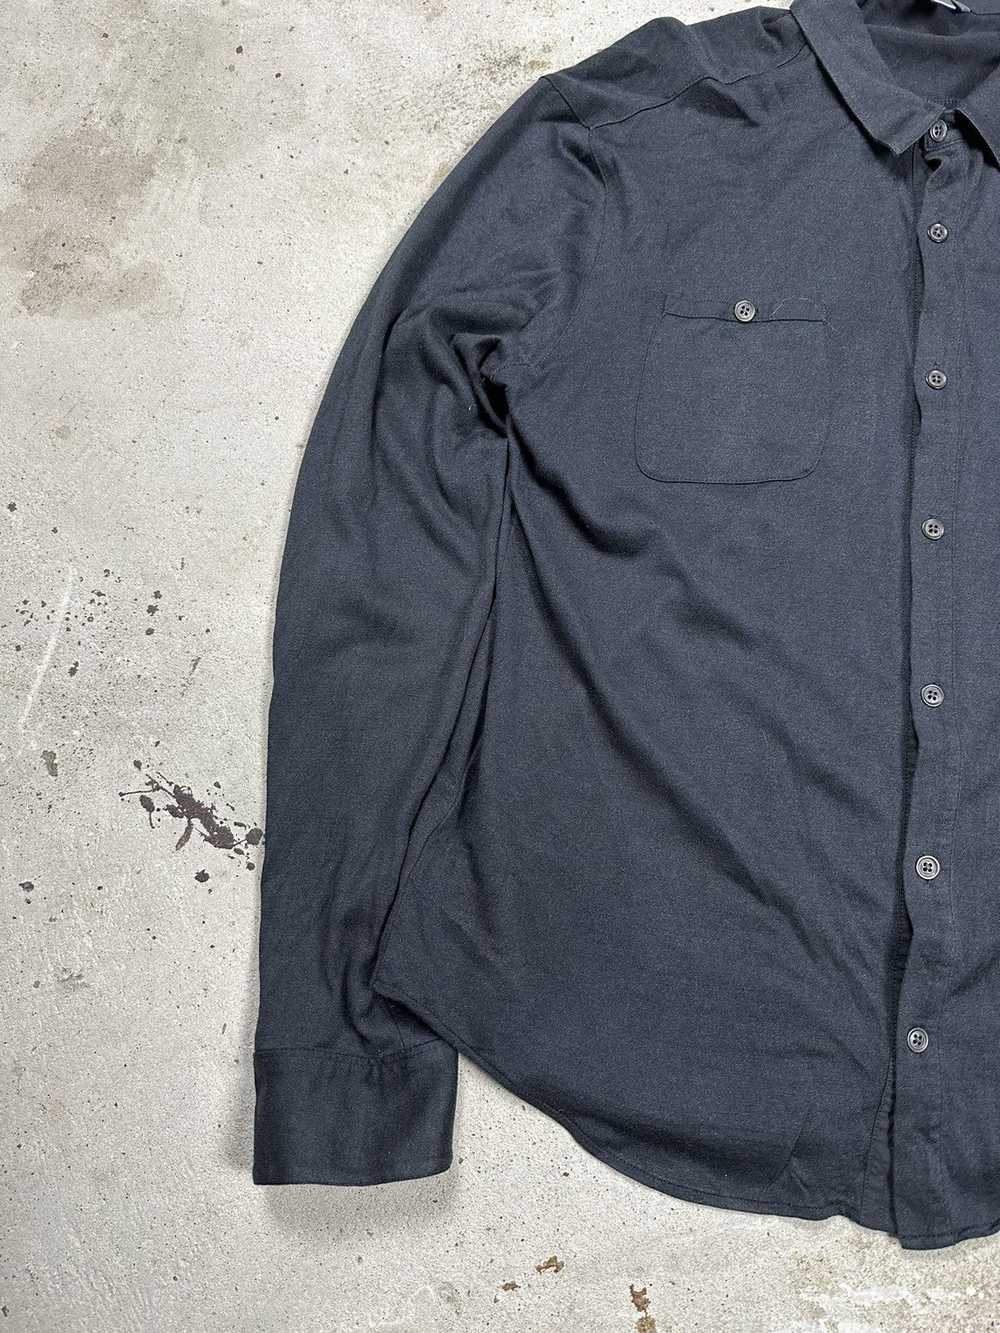 John Varvatos John Varvatos USA Silk Black Shirt … - image 3